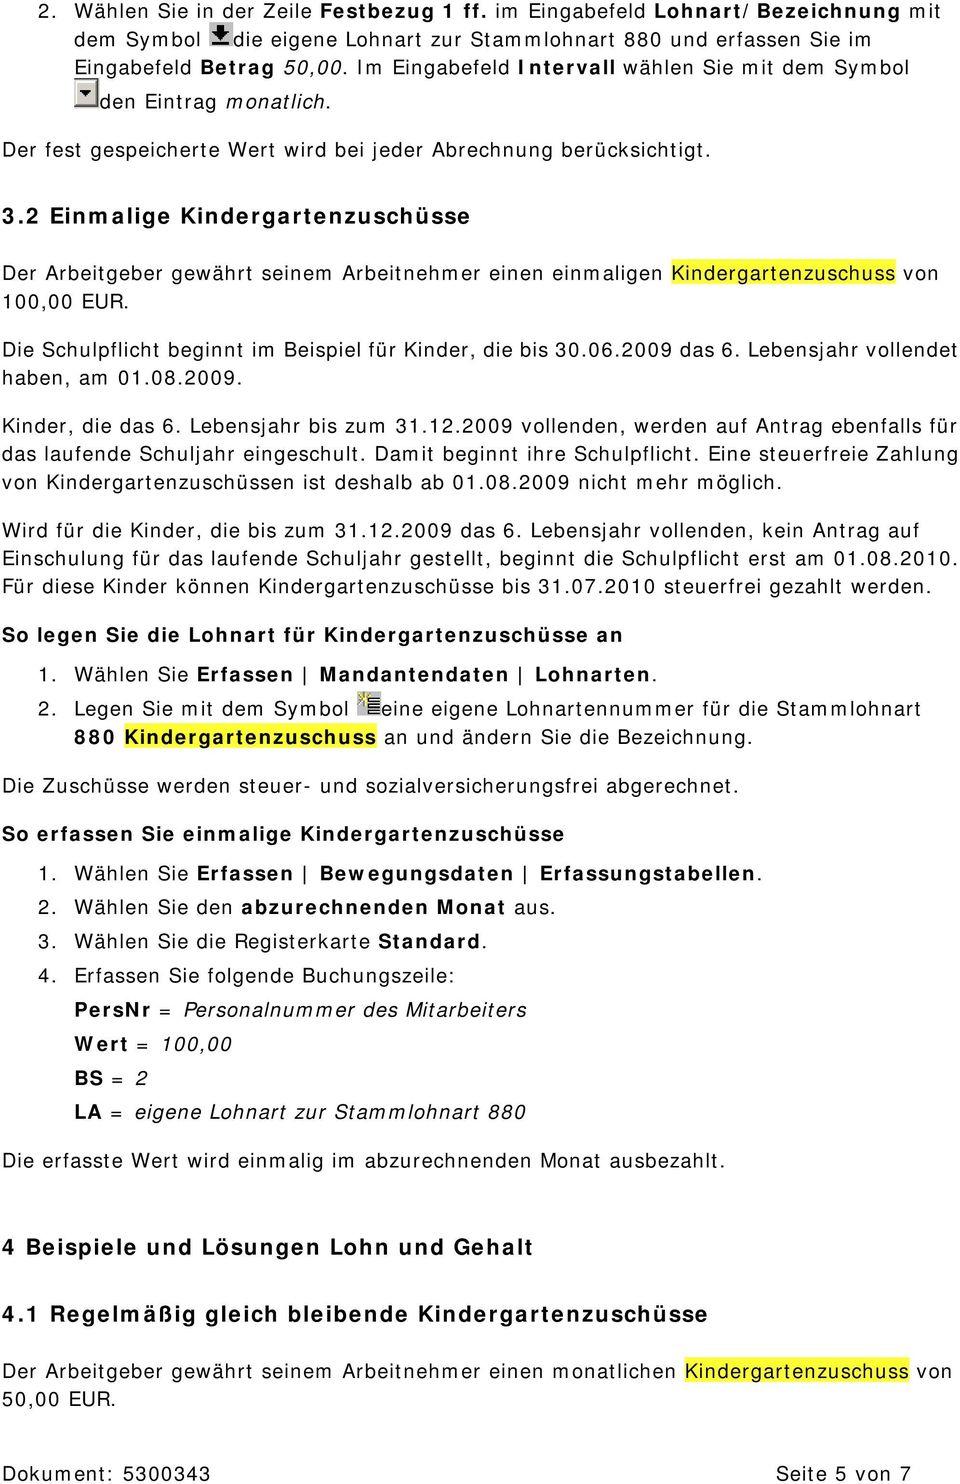 Kindergartenzuschusse Lexikon Lohn Und Personal Pdf Free Download